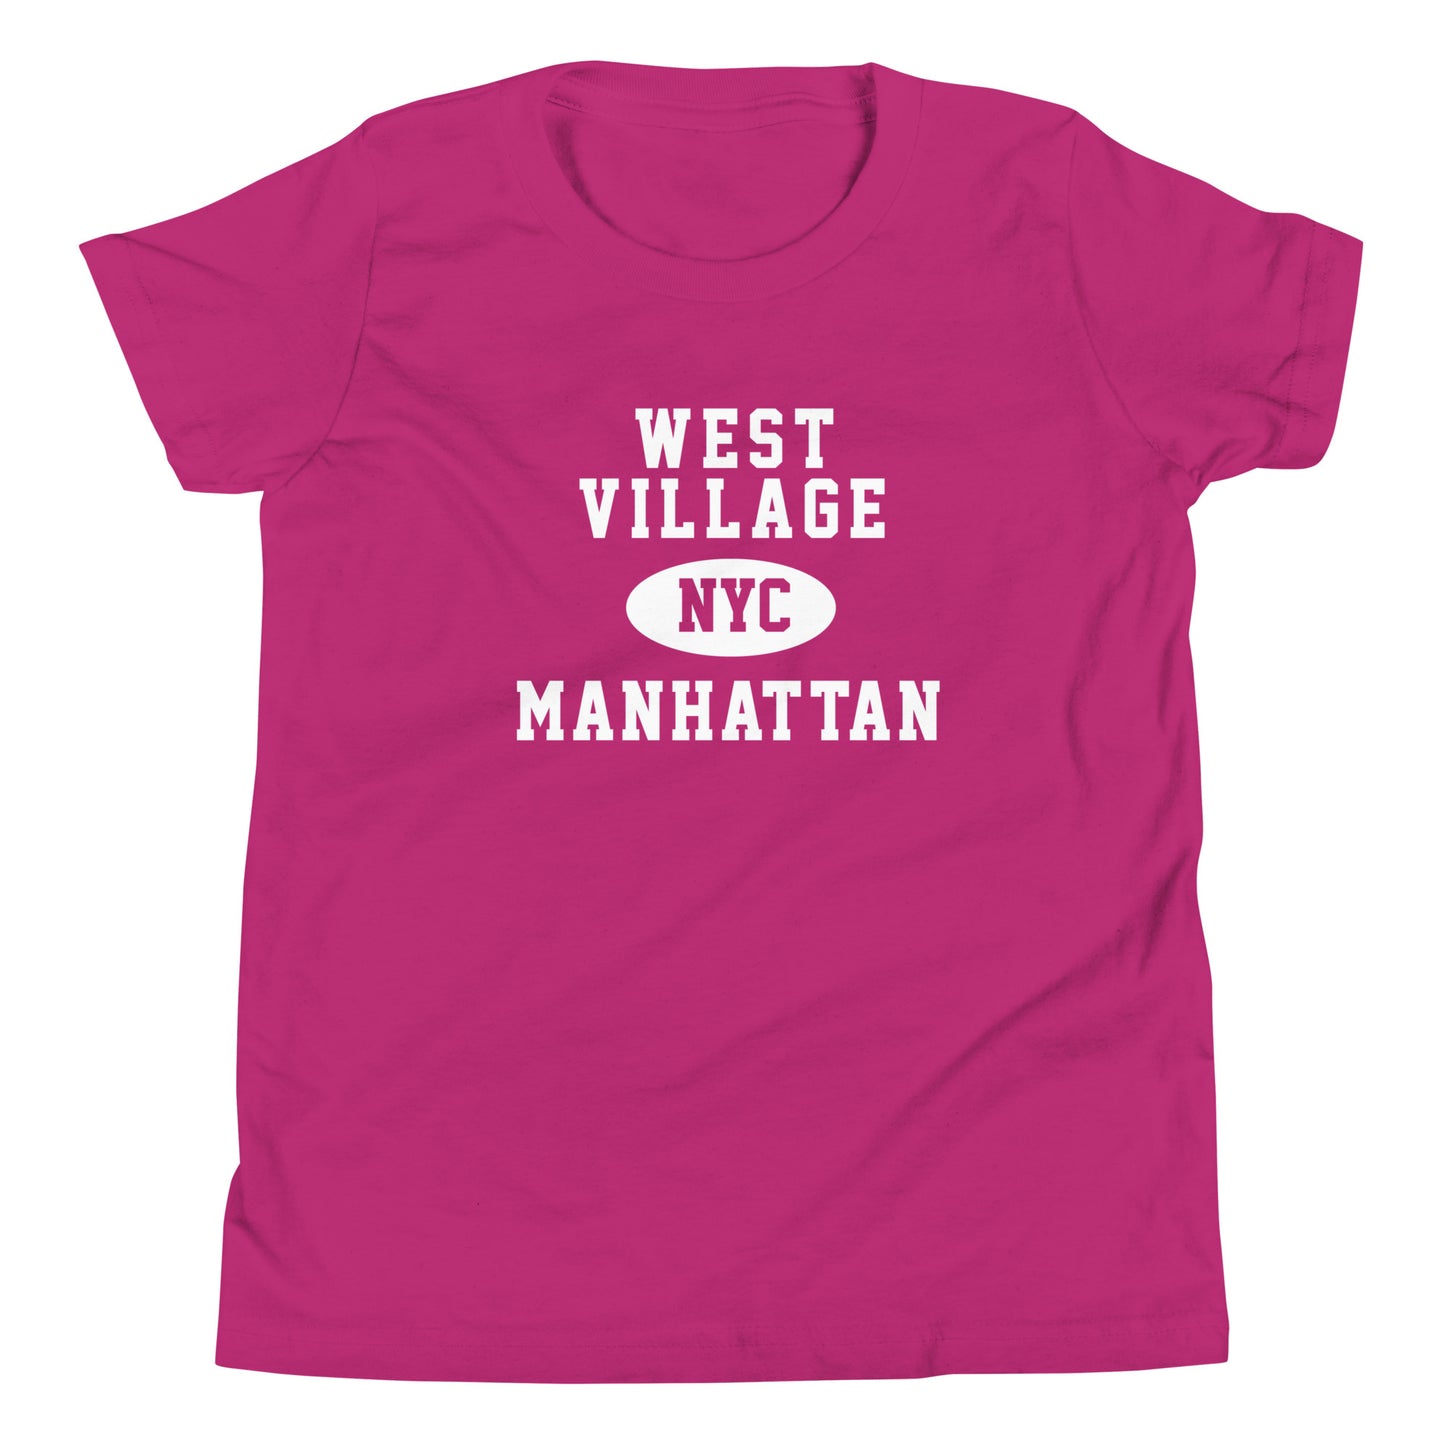 West Village Manhattan NYC Youth Tee